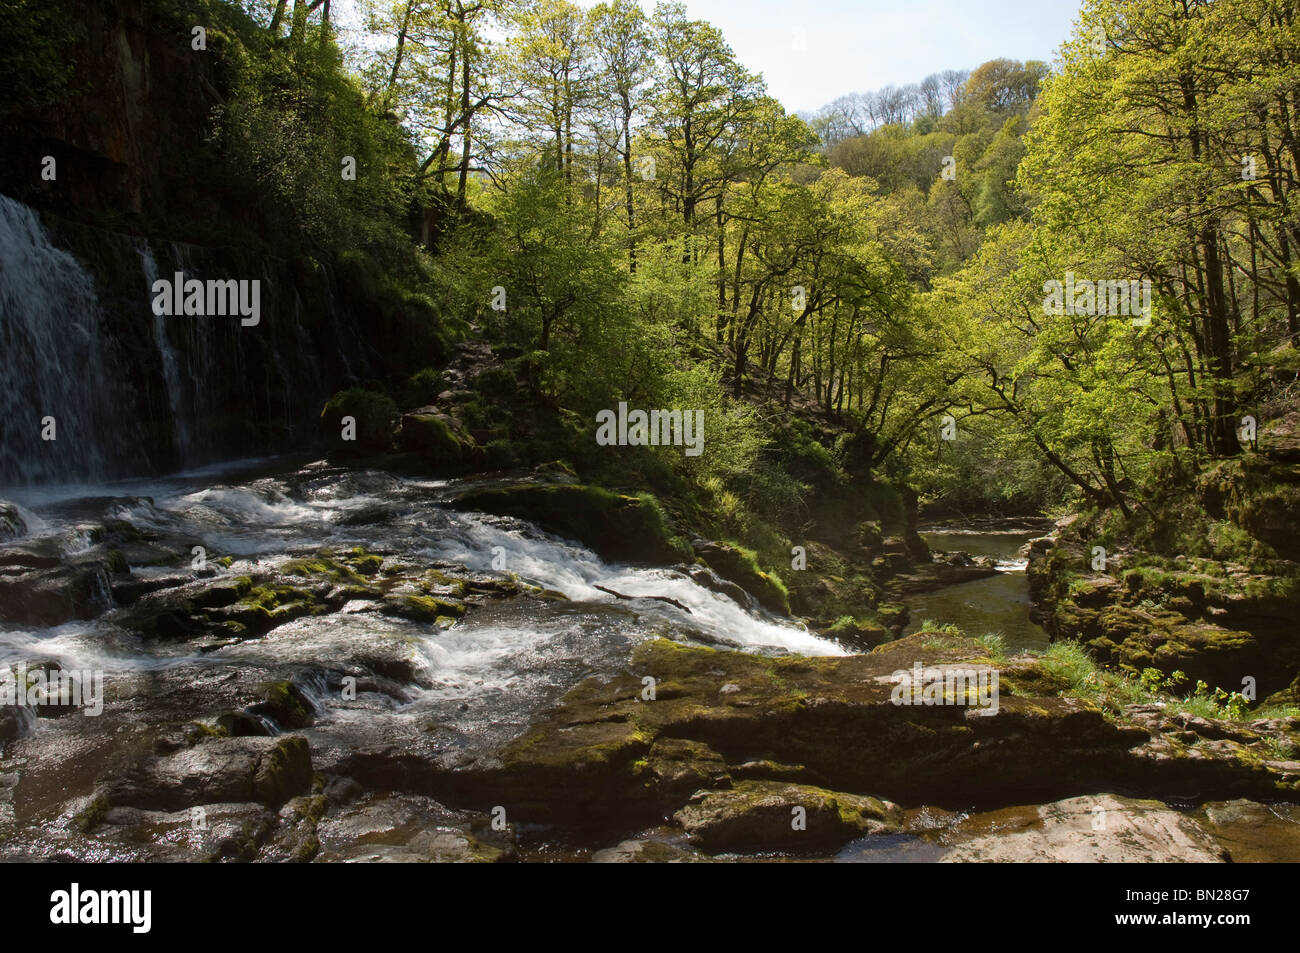 Sgwd Fias Oisans-Afon Gwyn, Mellte, Ystradfellte, parc national de Brecon Beacons, Powys, Pays de Galles, Royaume-Uni, Europe Banque D'Images